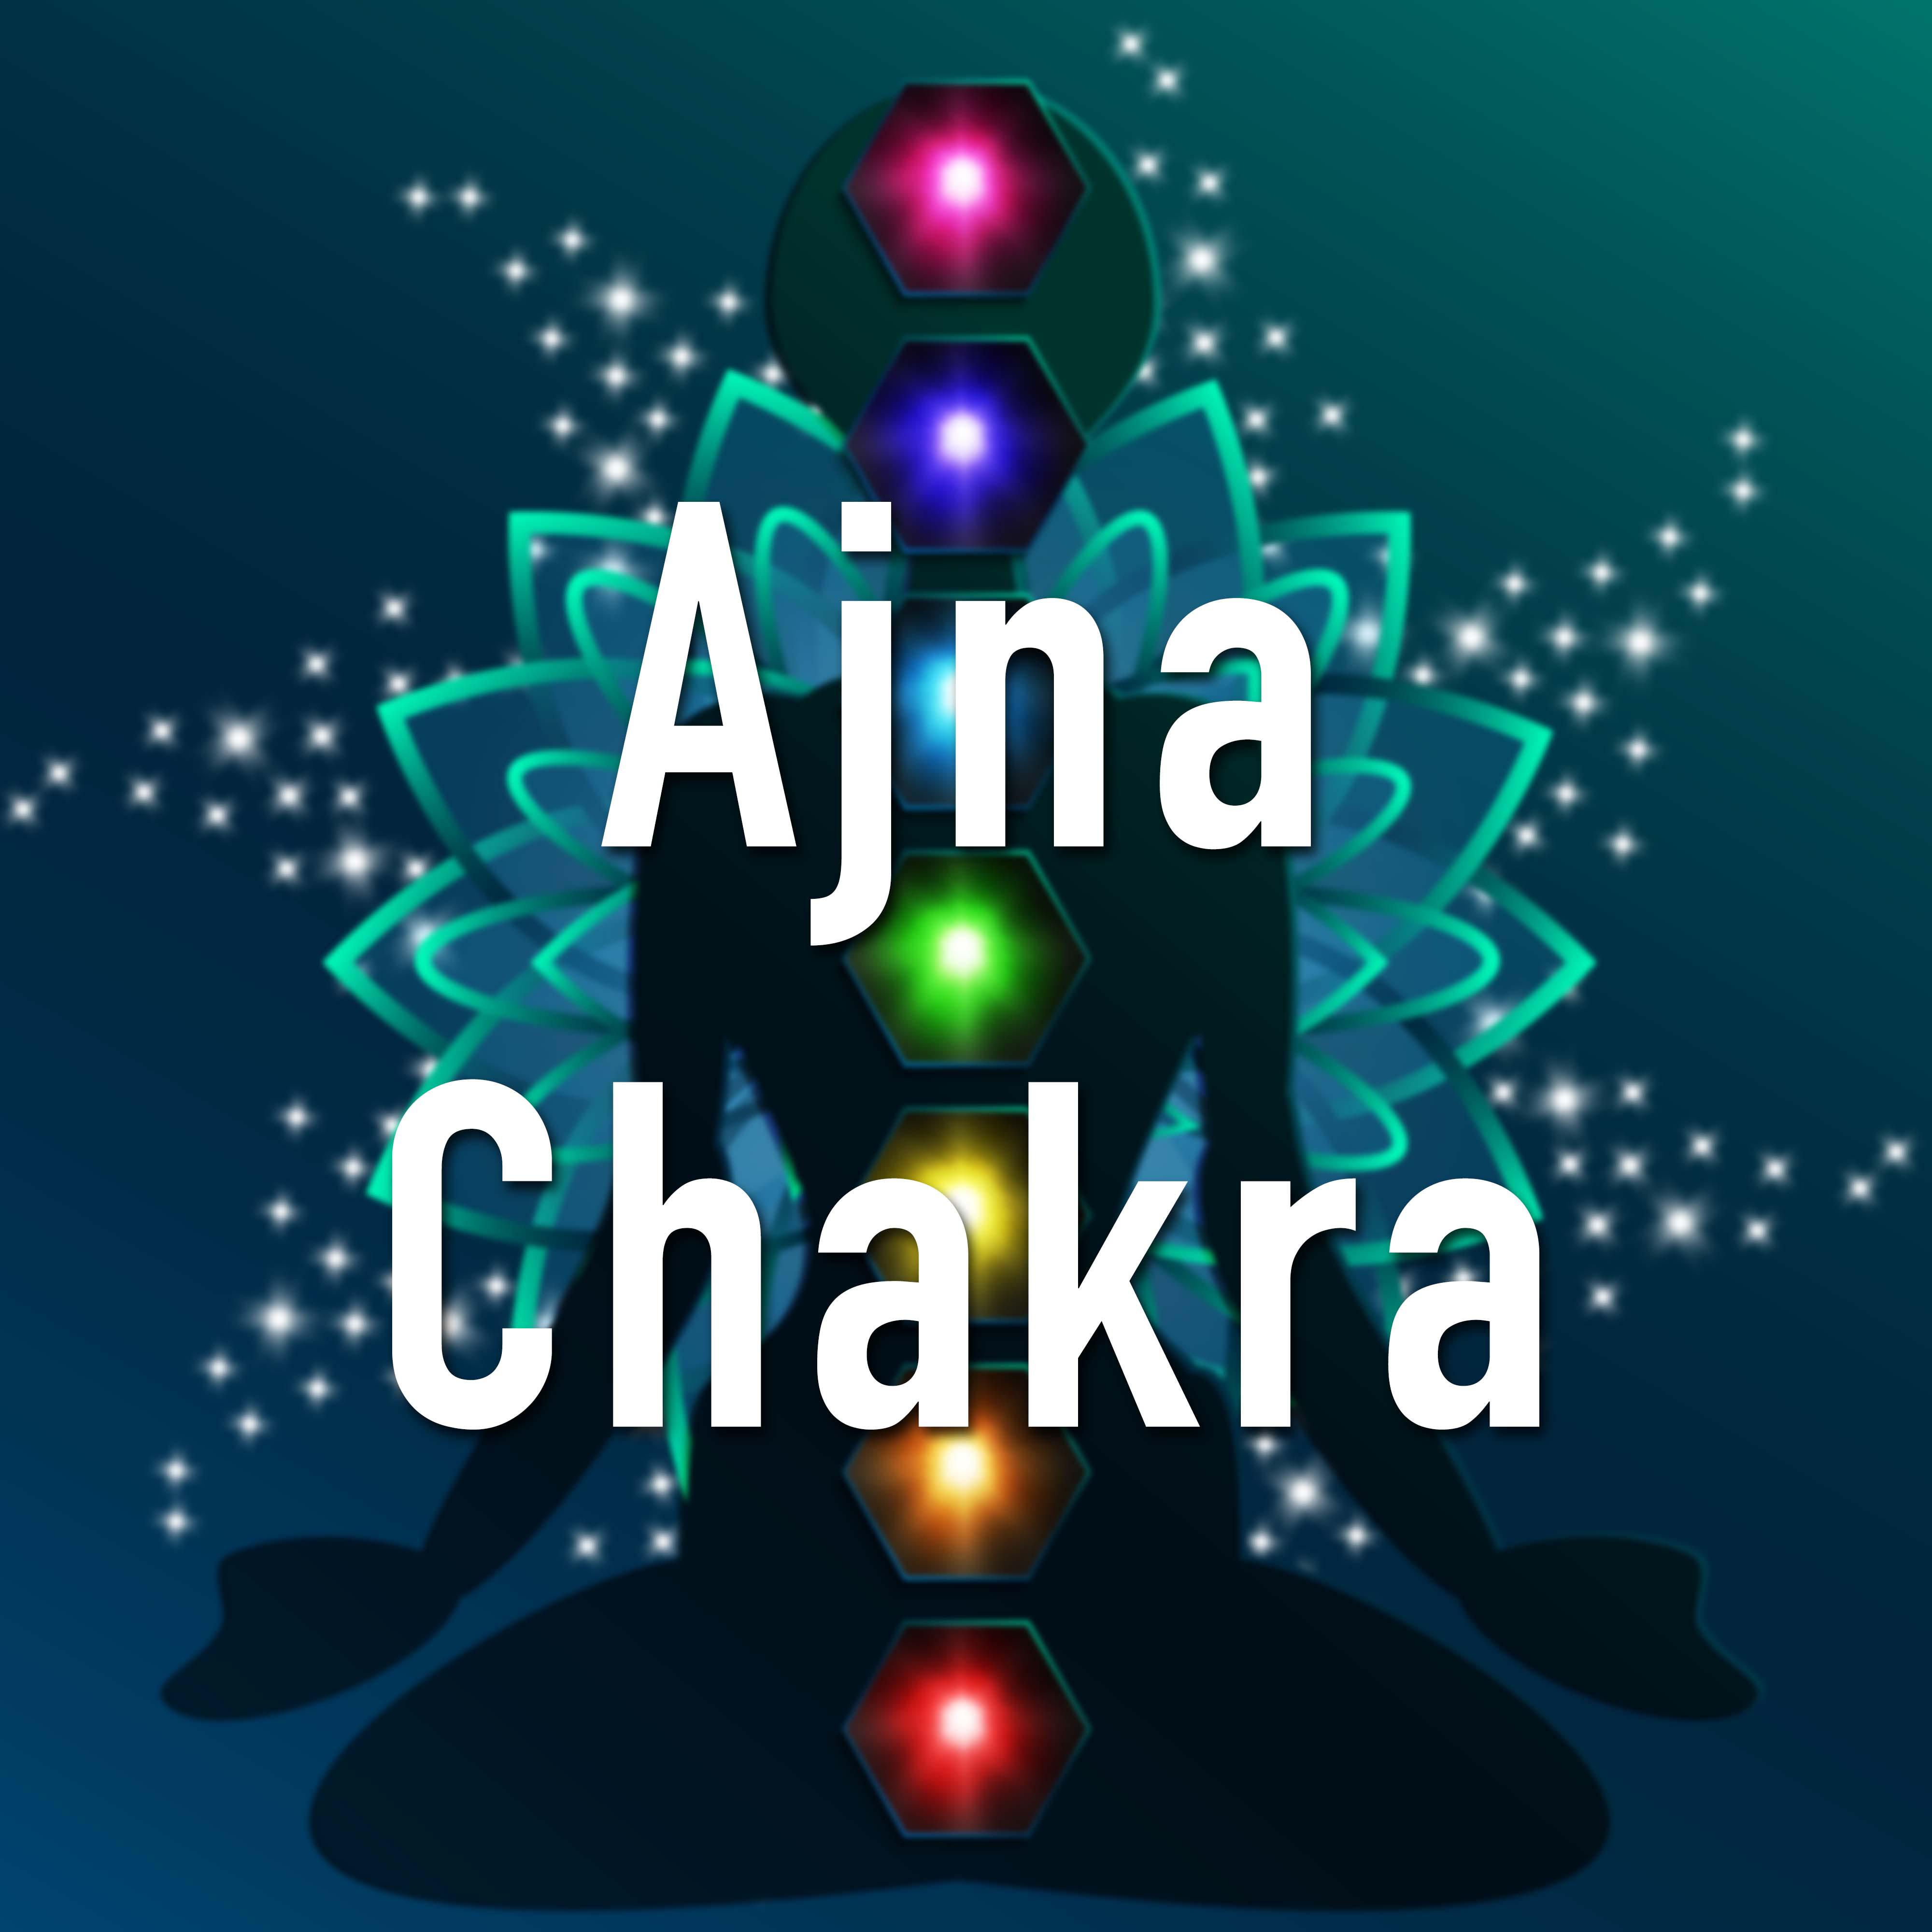 Ajna Chakra - 7 chakras chacras del cuerpo